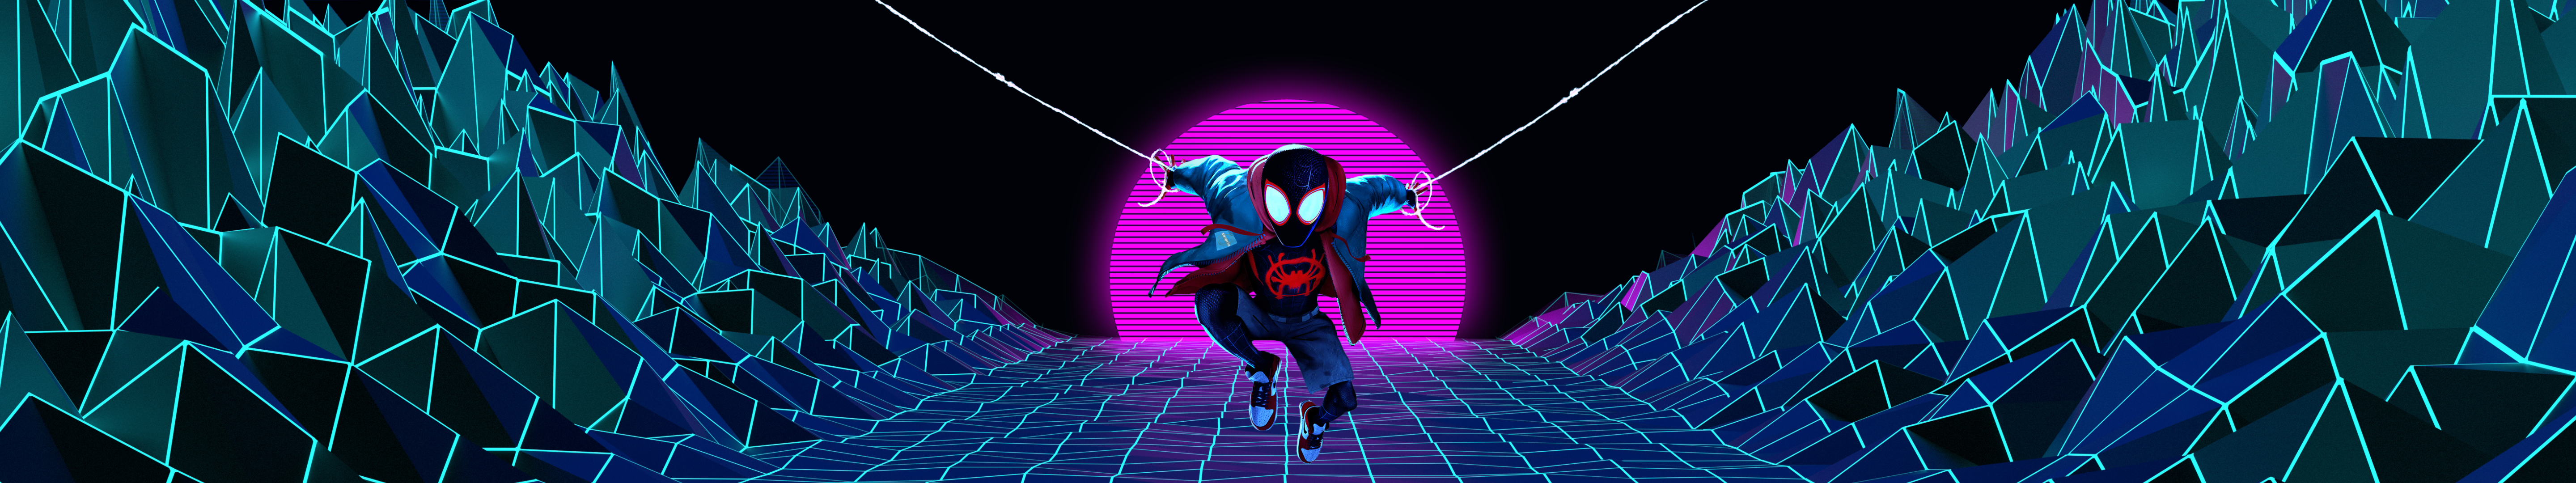 General 5760x1080 Spider-Man Spider-Man: Into the Spider-Verse digital art